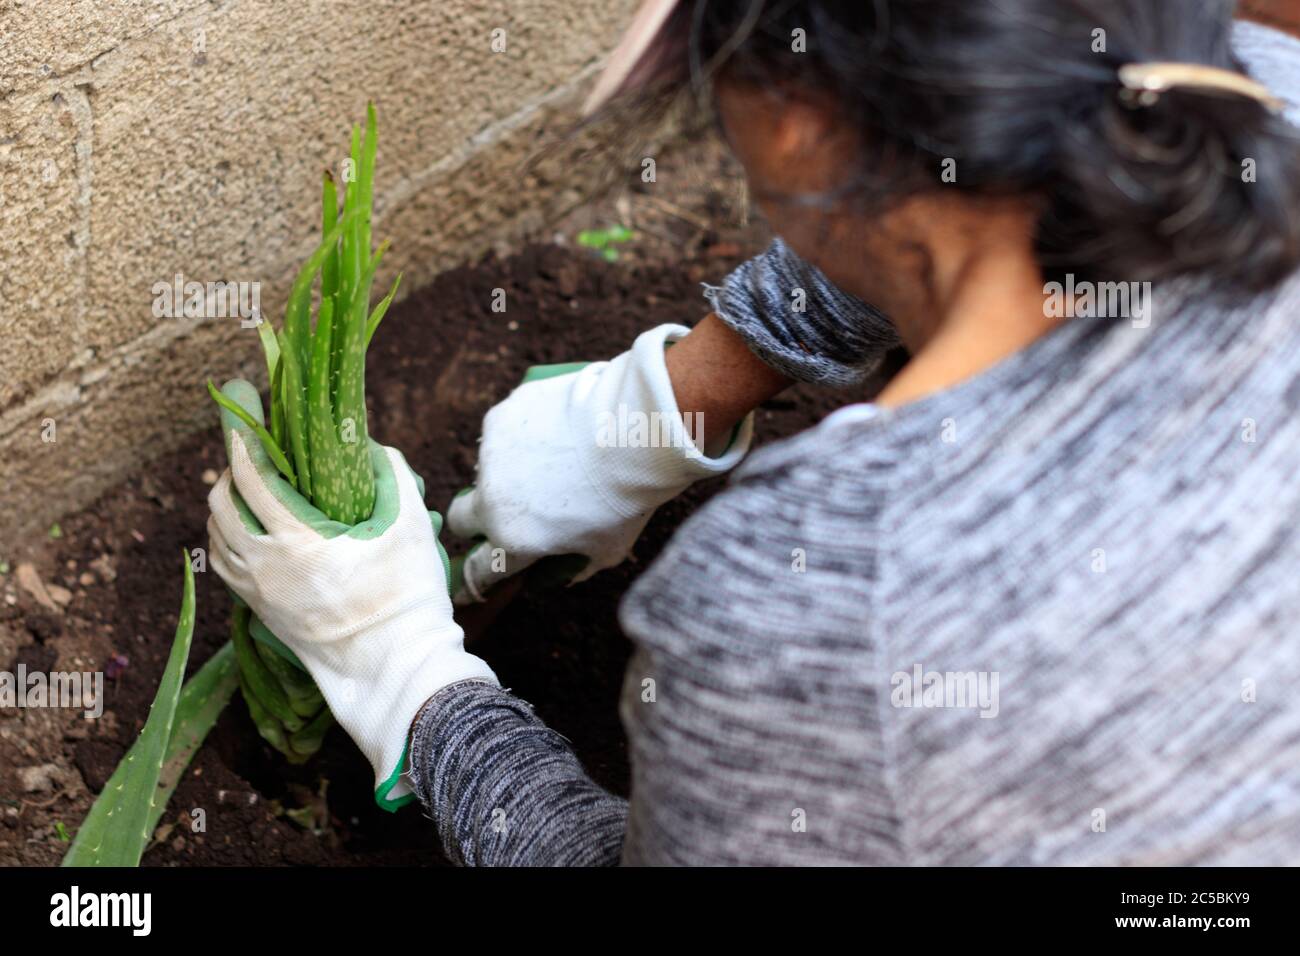 woman planting aloe vera in a garden Stock Photo